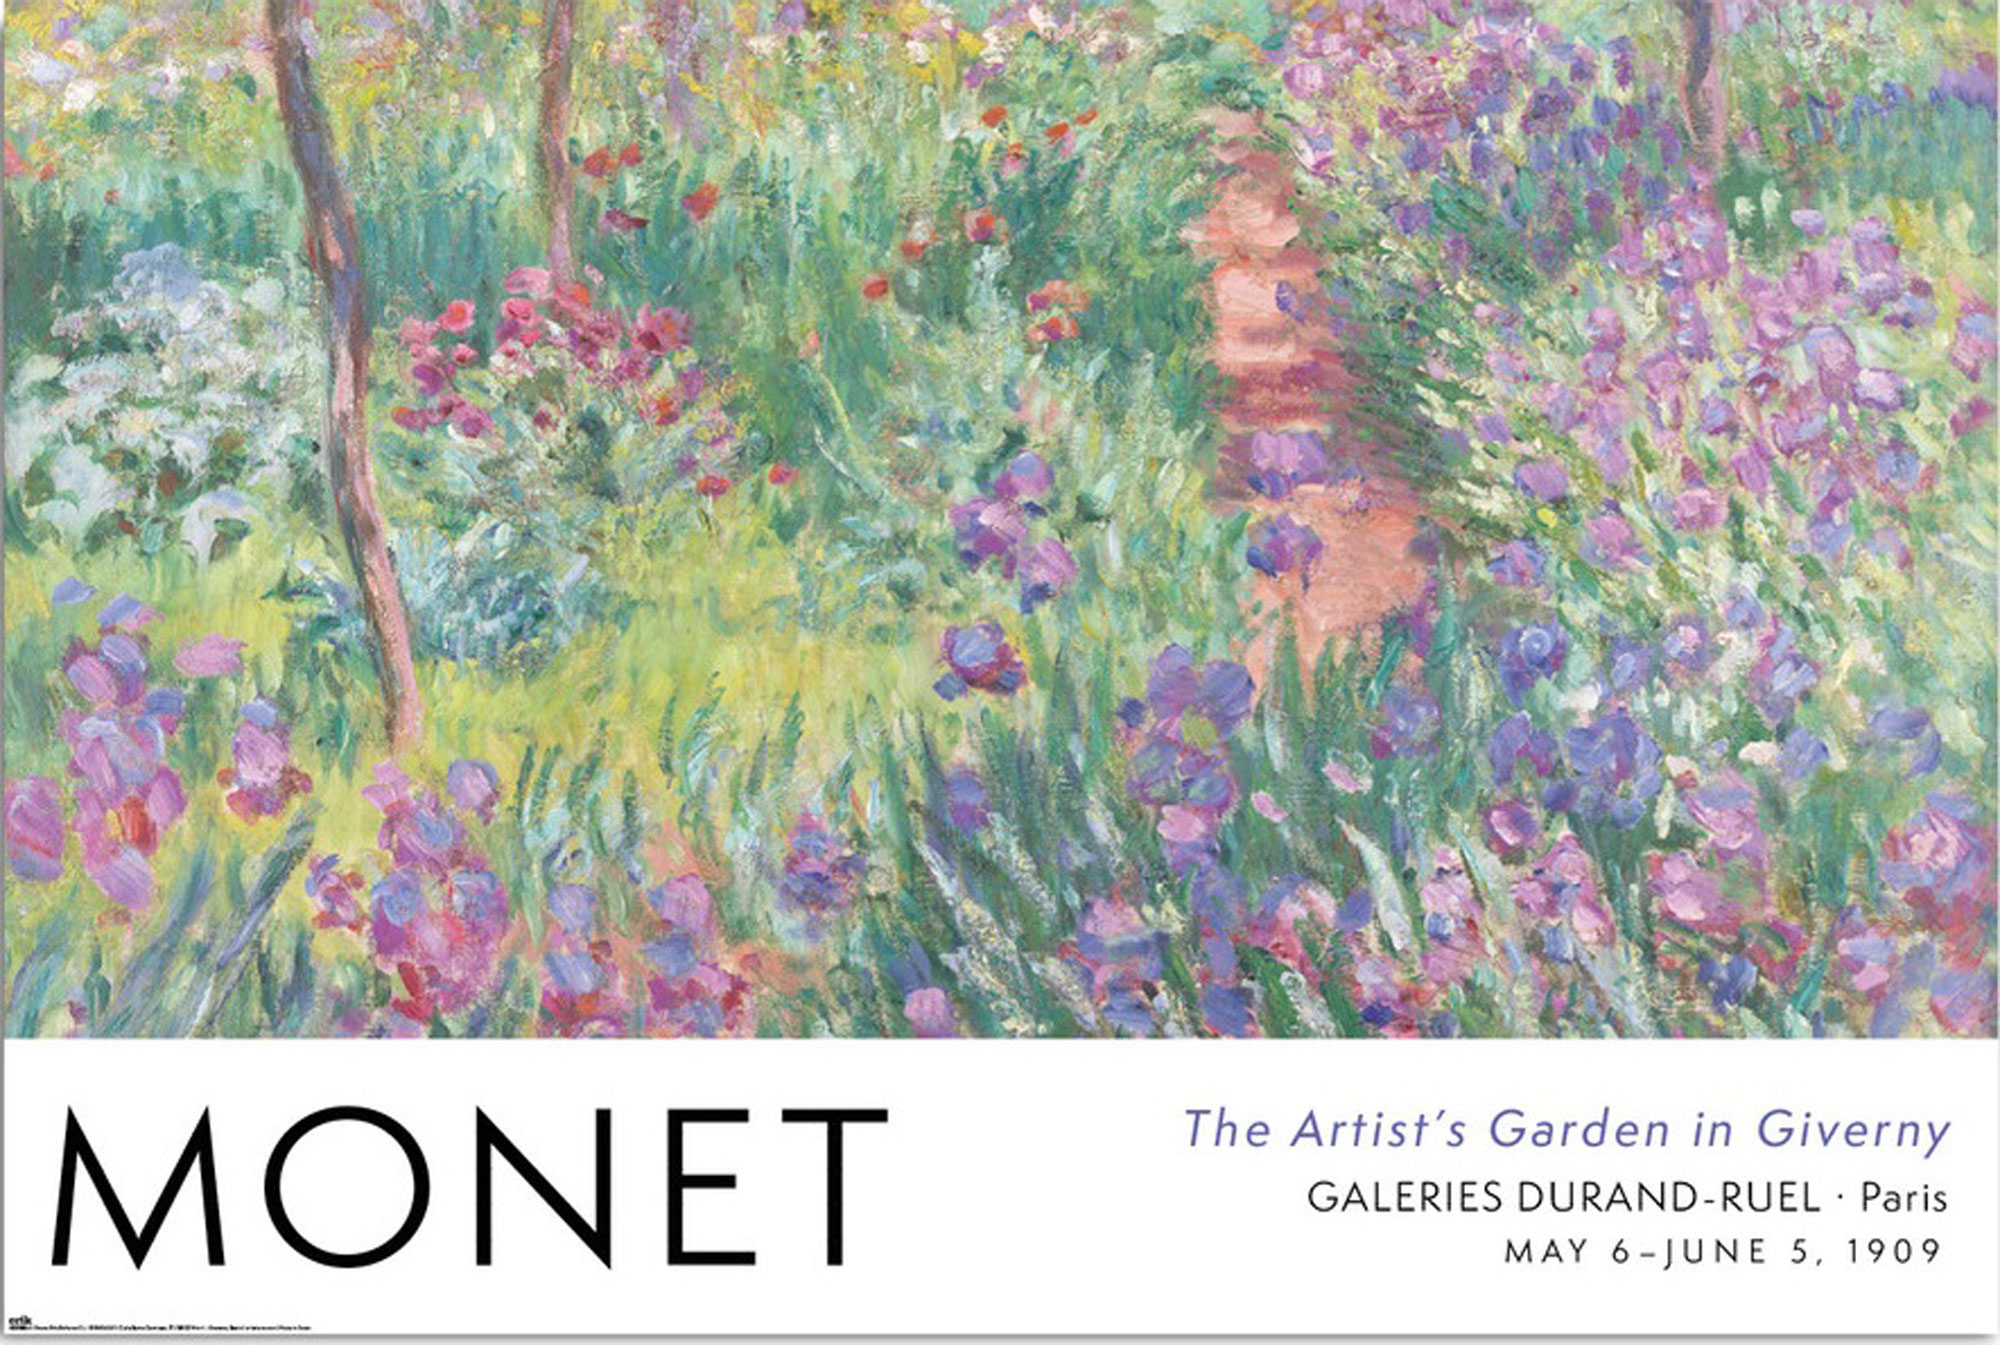 Giverny Monet, in Claude Garden -